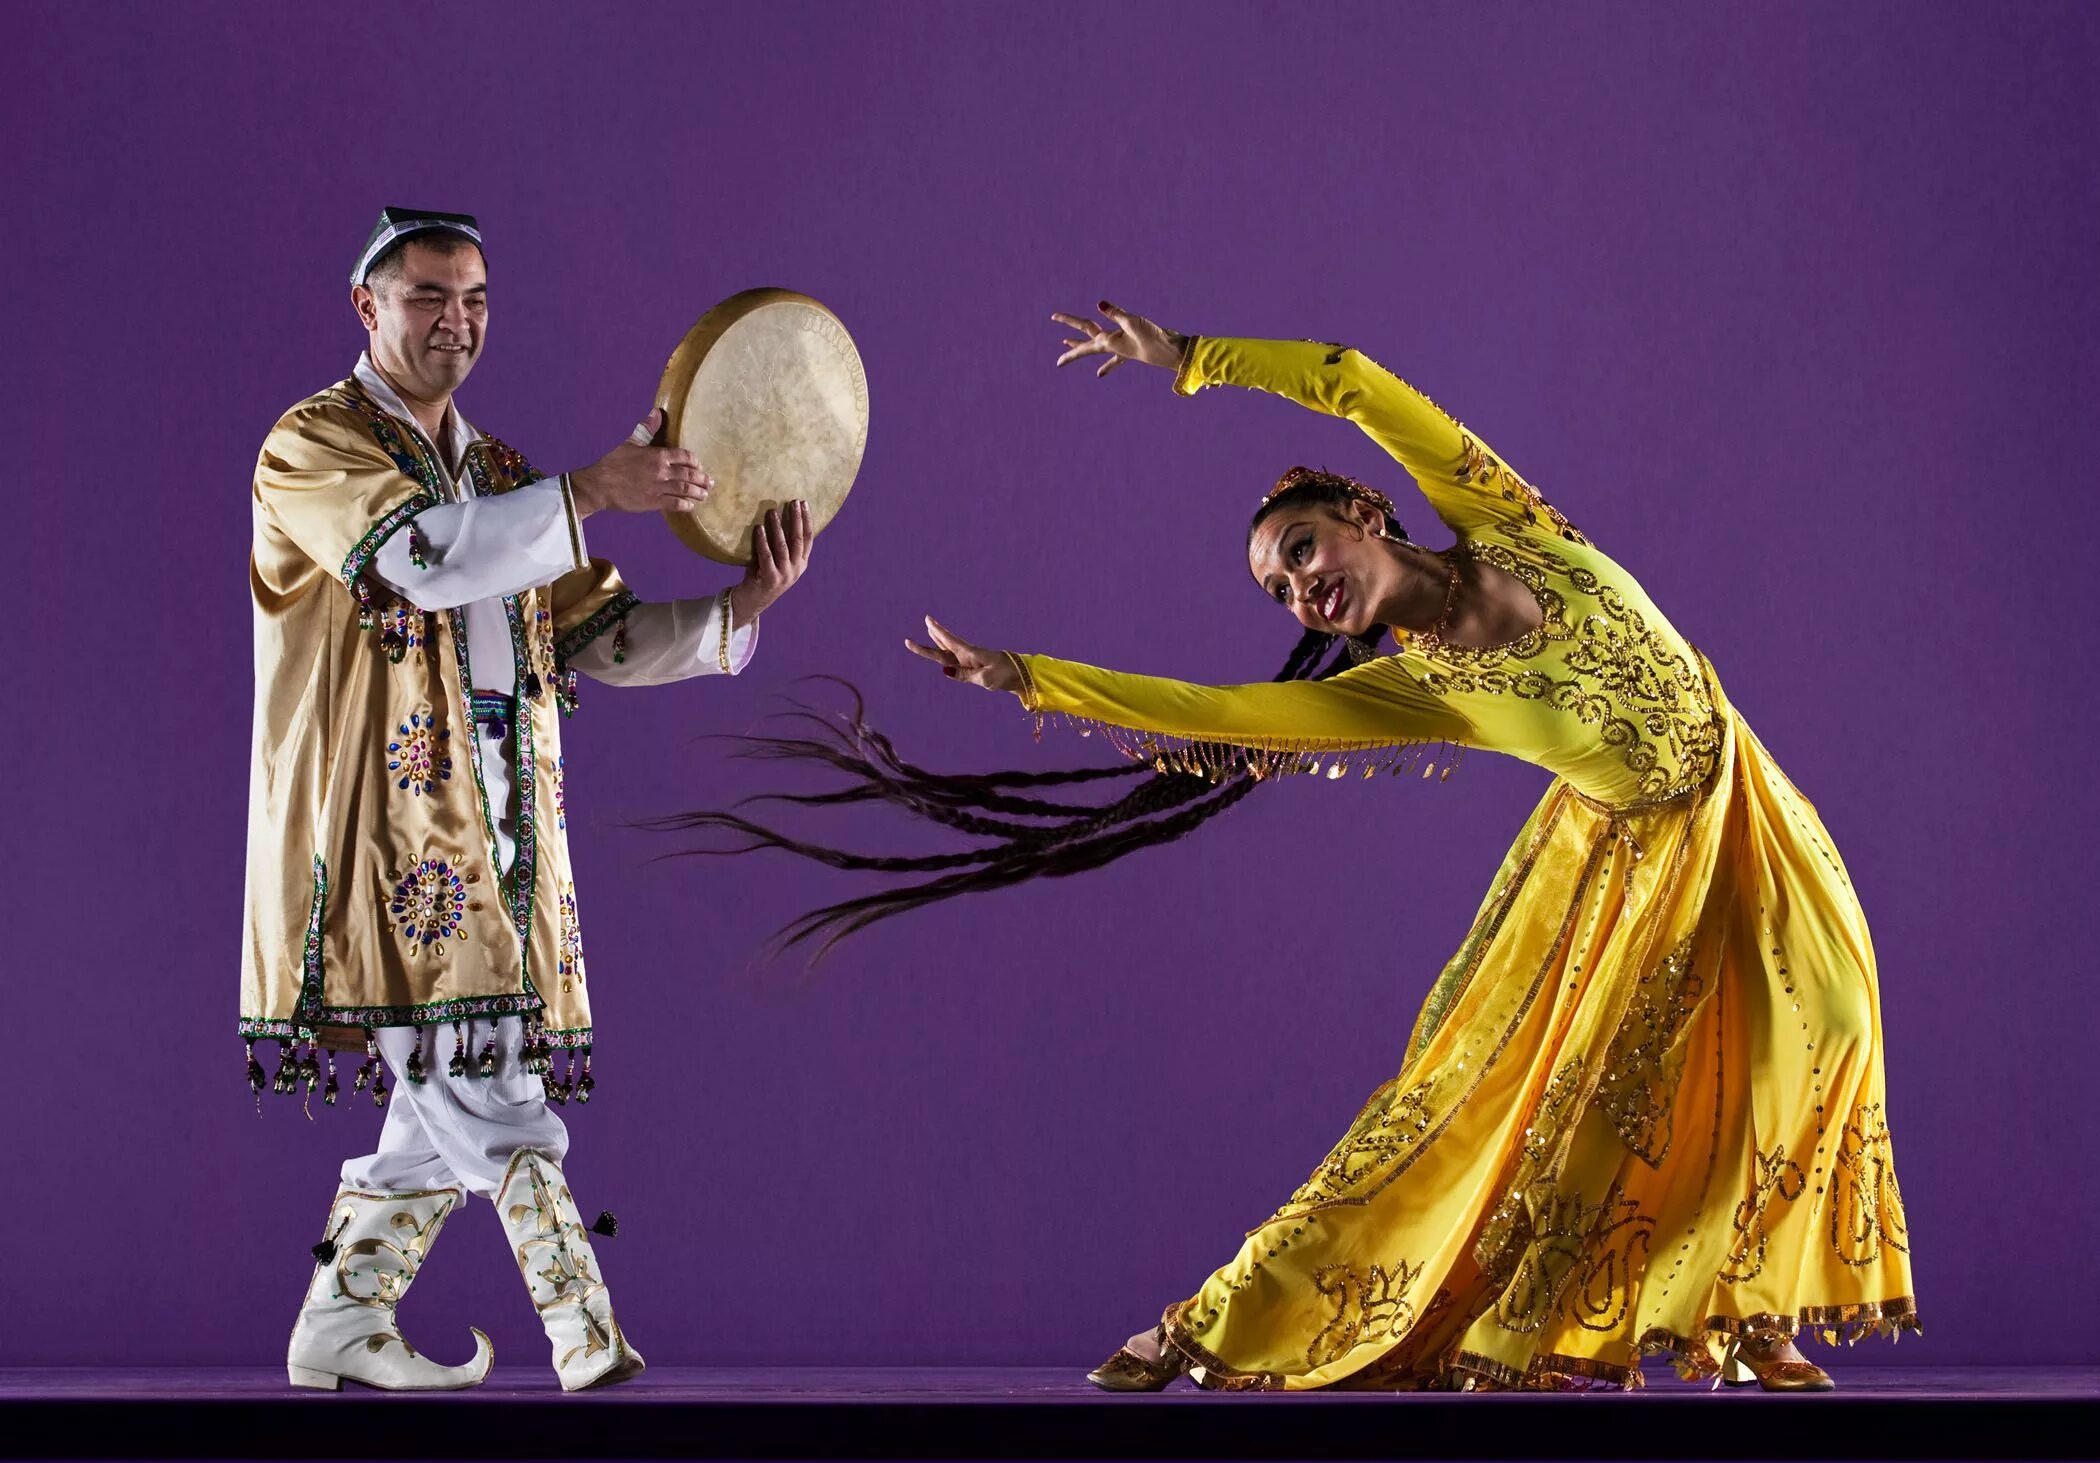 Узбекский национальный костюм Хорезм. Узбекский танец. Узбекский народный танец. Узбекские национальные танцы.